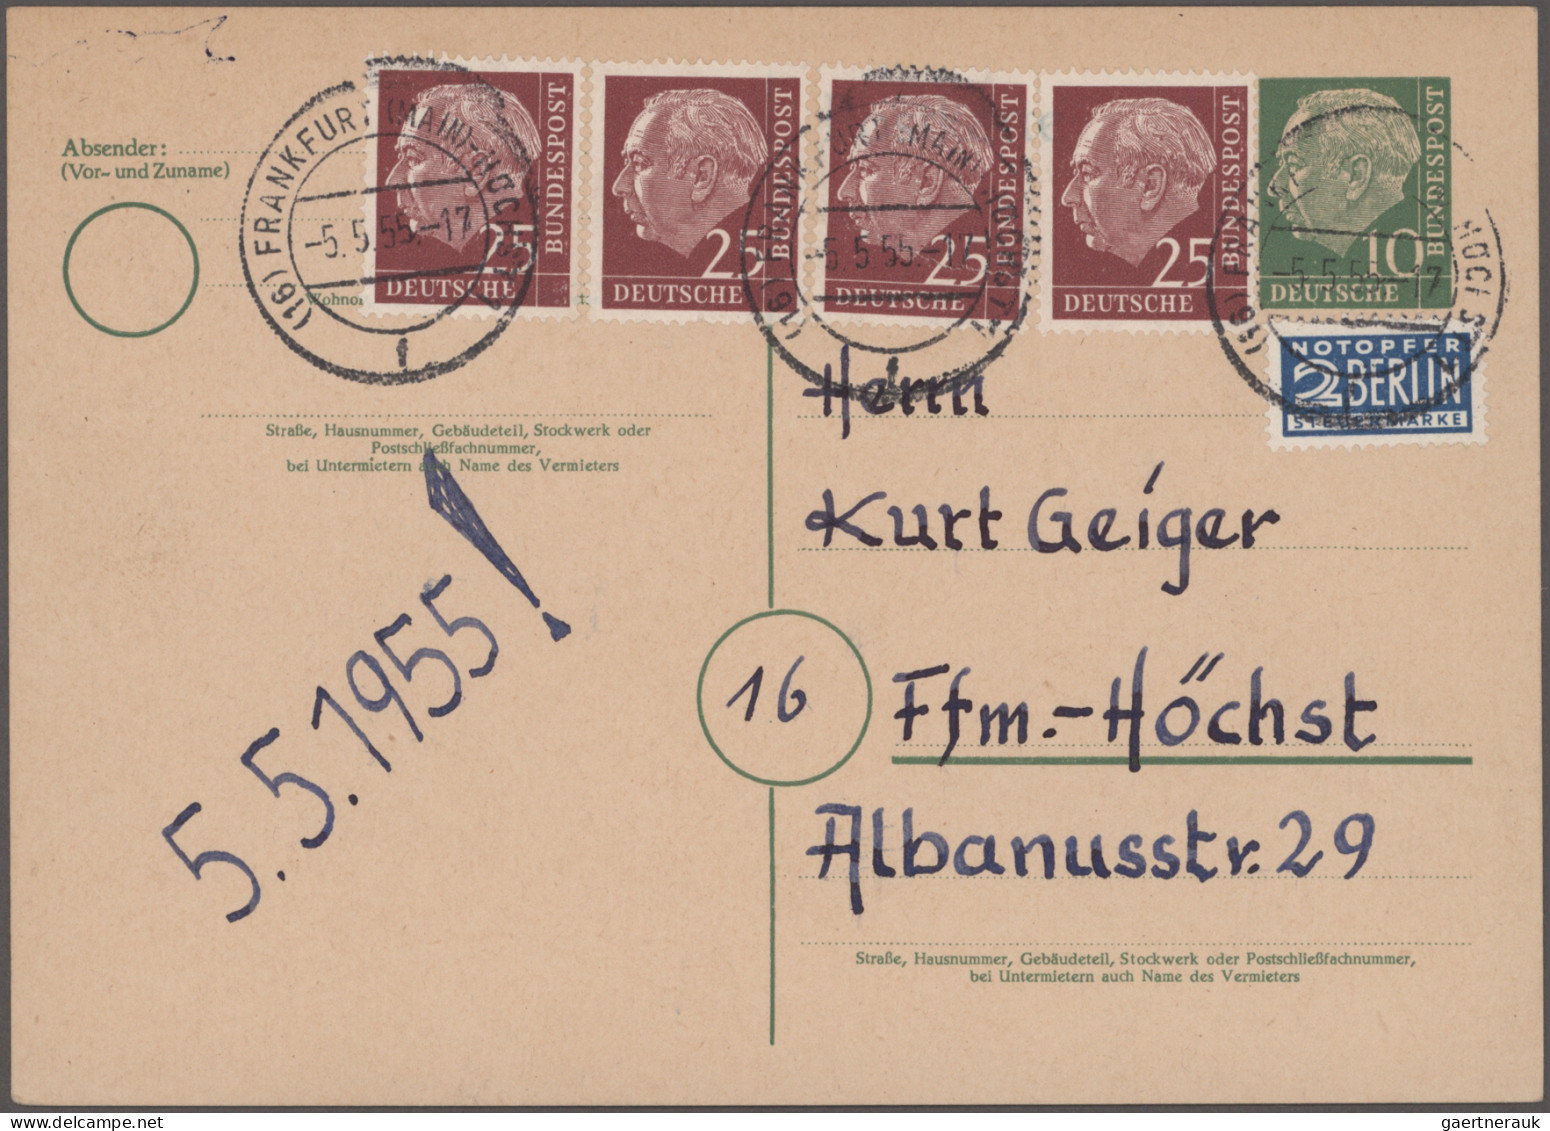 Bundesrepublik - Ganzsachen: 1954/1961, Heuss-Ganzsachen, saubere Sammlung von 5